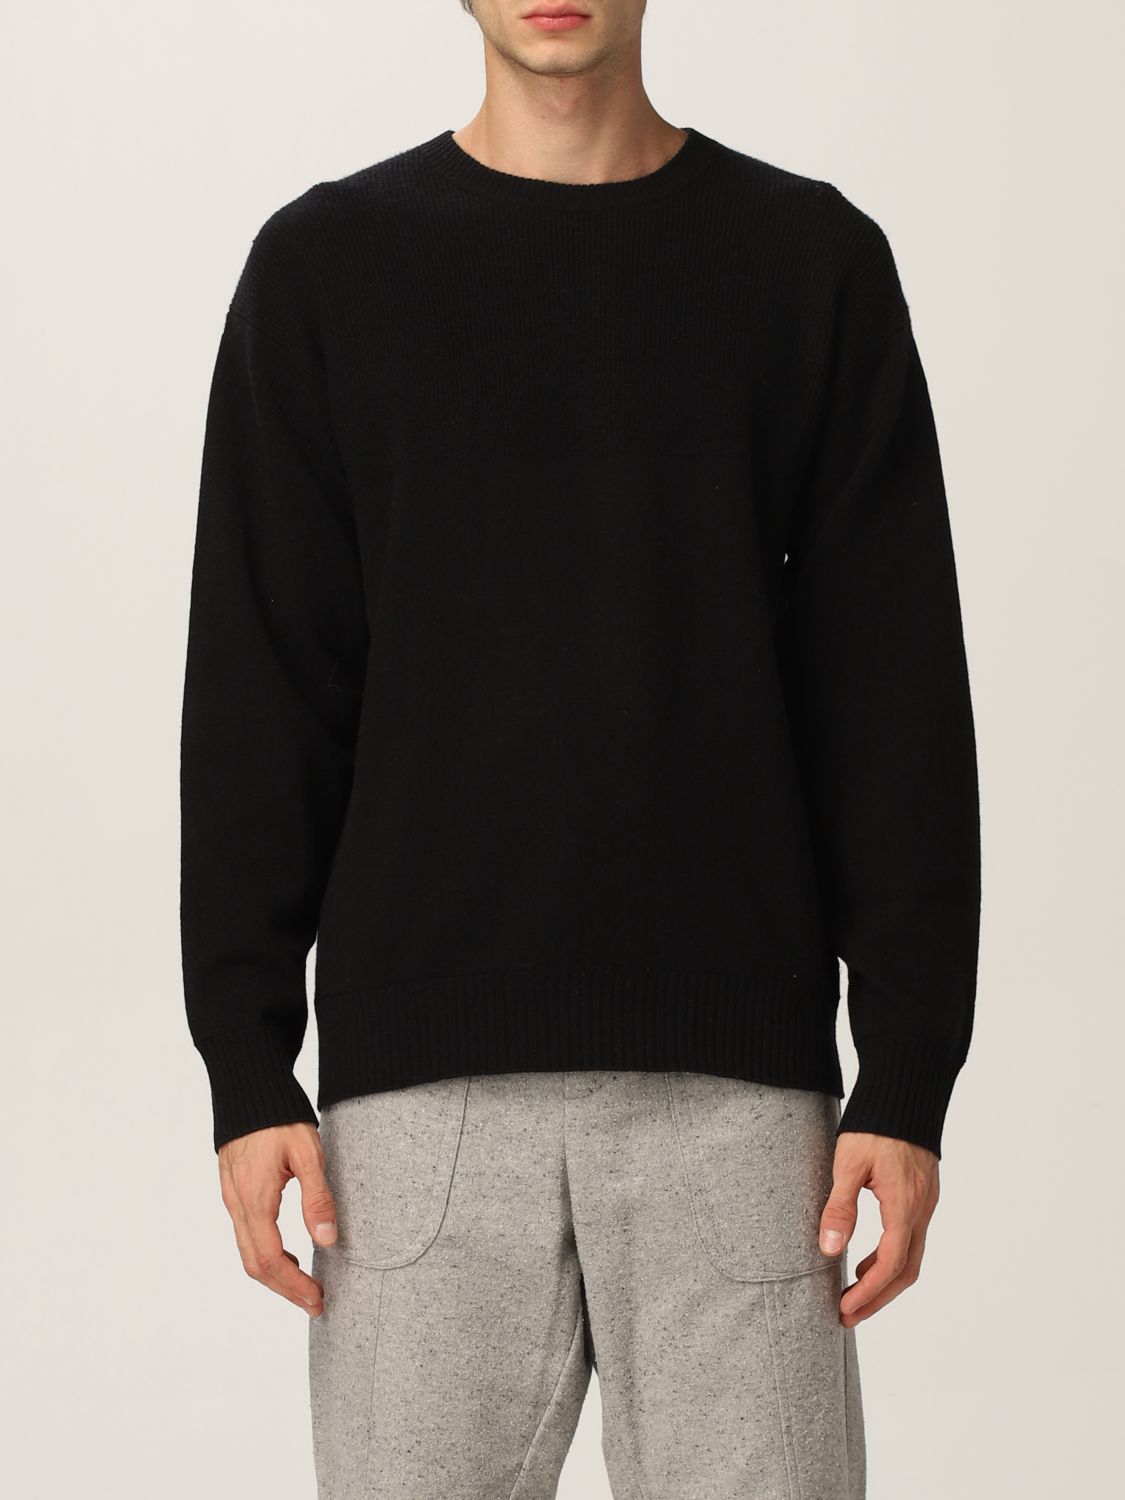 Z ZEGNA: sweater for man - Black | Z Zegna sweater ZZ110 VYH12 online ...